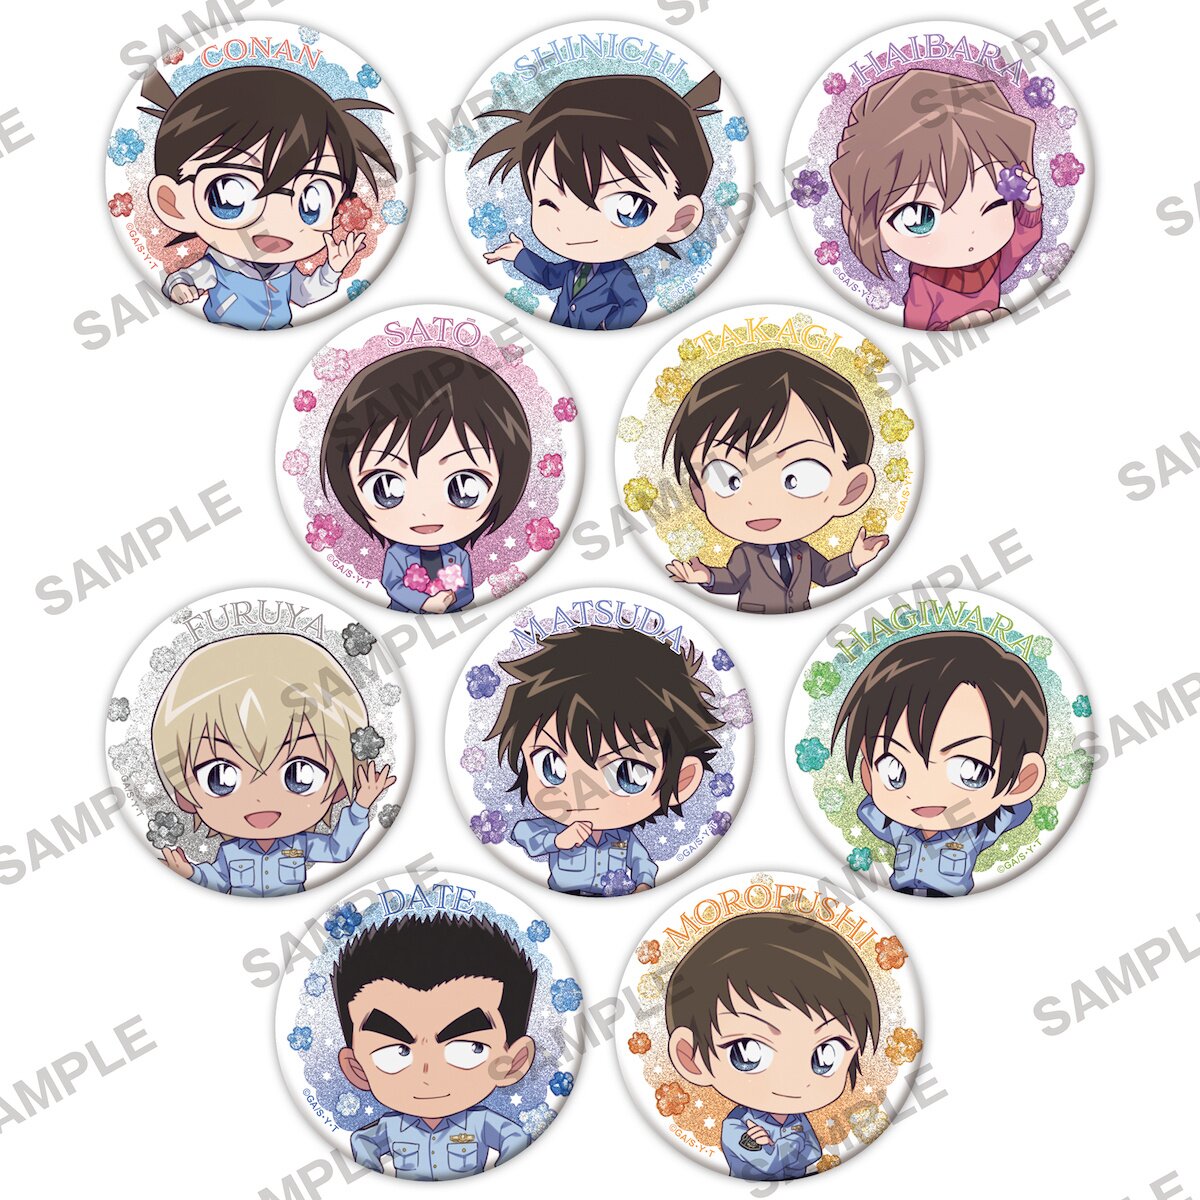 Detective Conan: Kompeito Ver. Sparkling Pin Badge Collection Complete ...